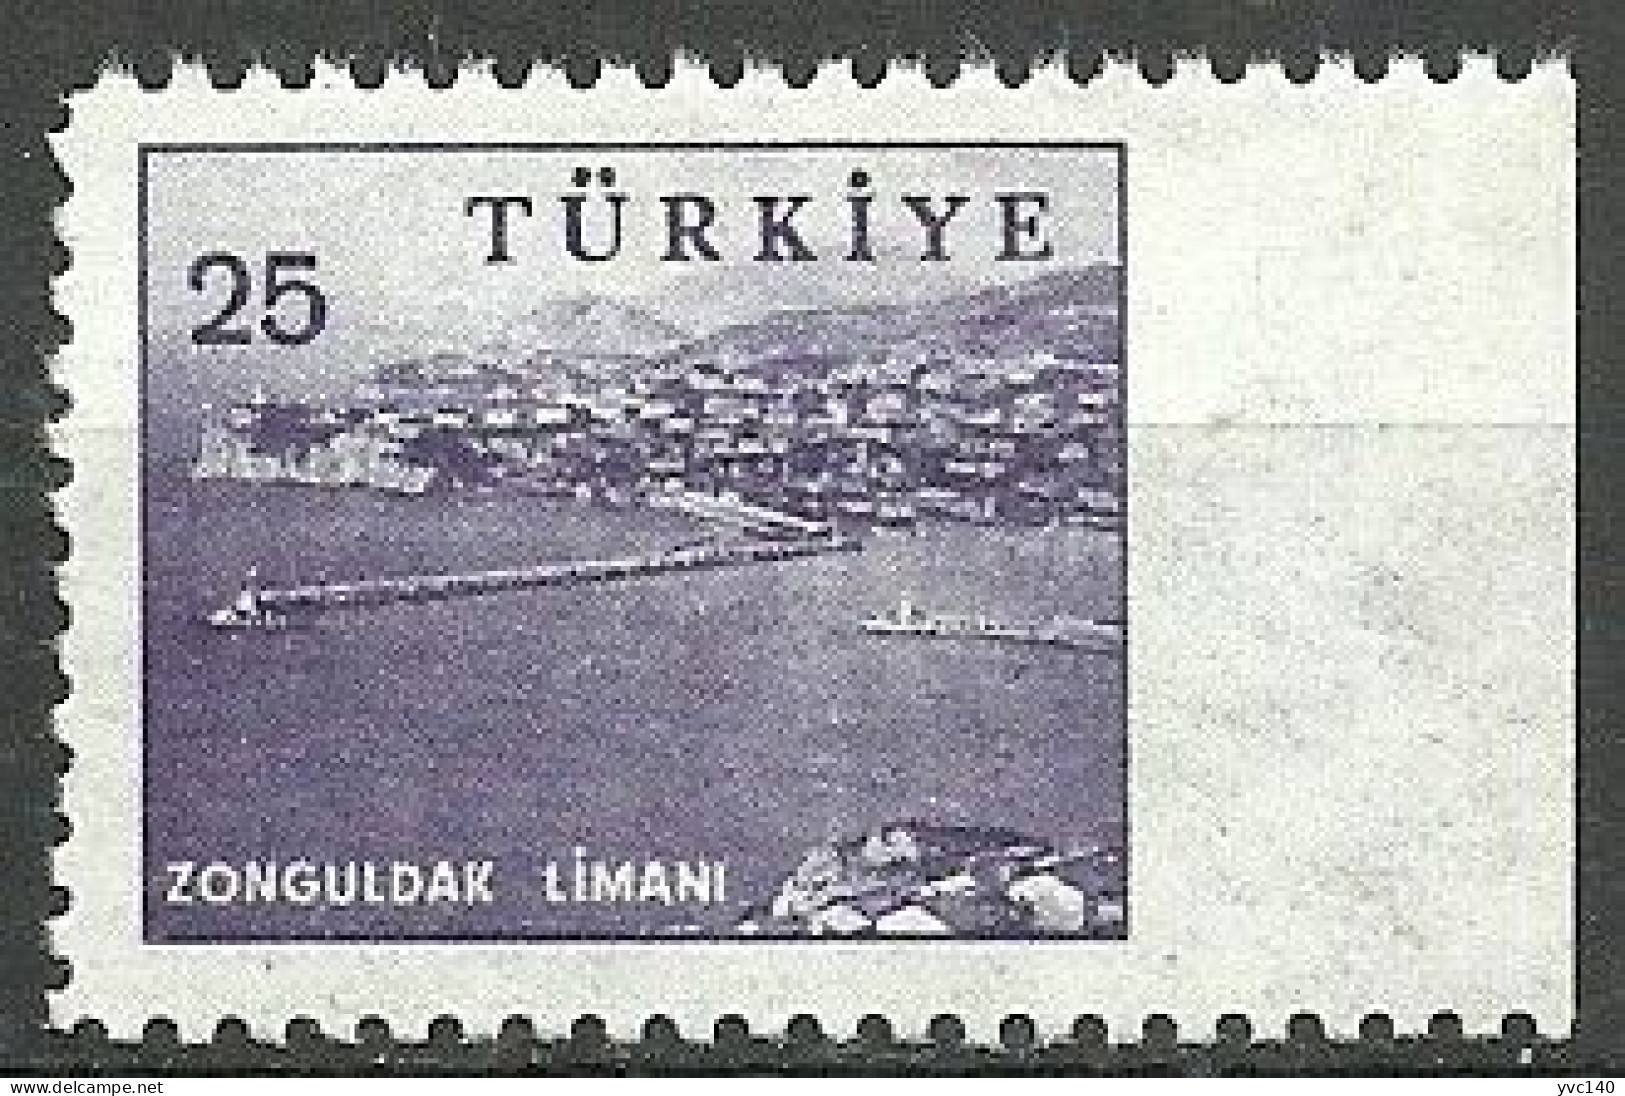 Turkey; 1959 Pictorial Postage Stamp 25 K. ERROR "Imperf. Edge" - Ungebraucht